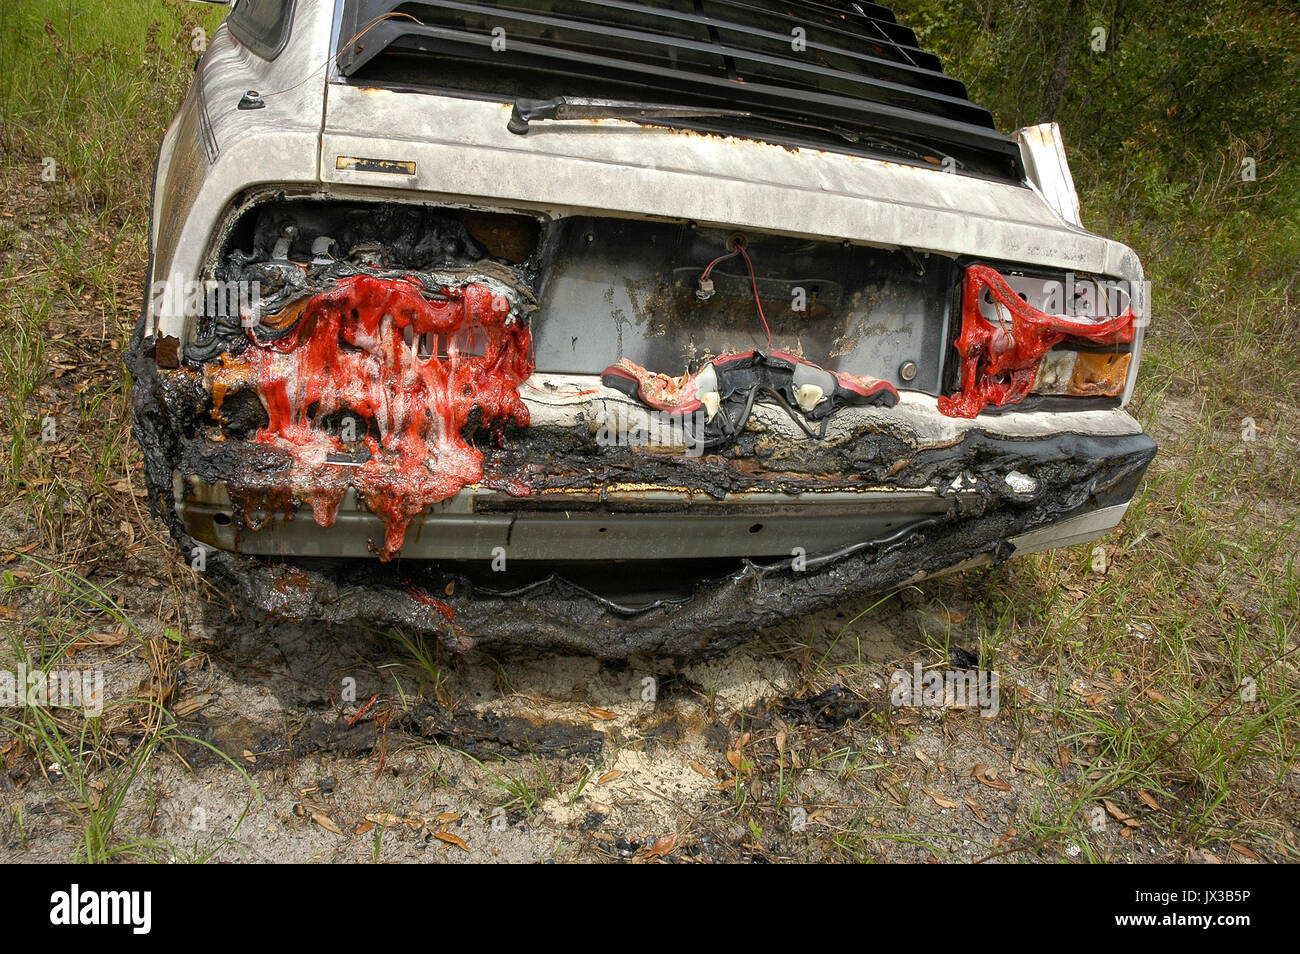 Auto verbrannt in einem Haus Feuer mit geschmolzener Kunststoff Rückleuchten. Stockfoto